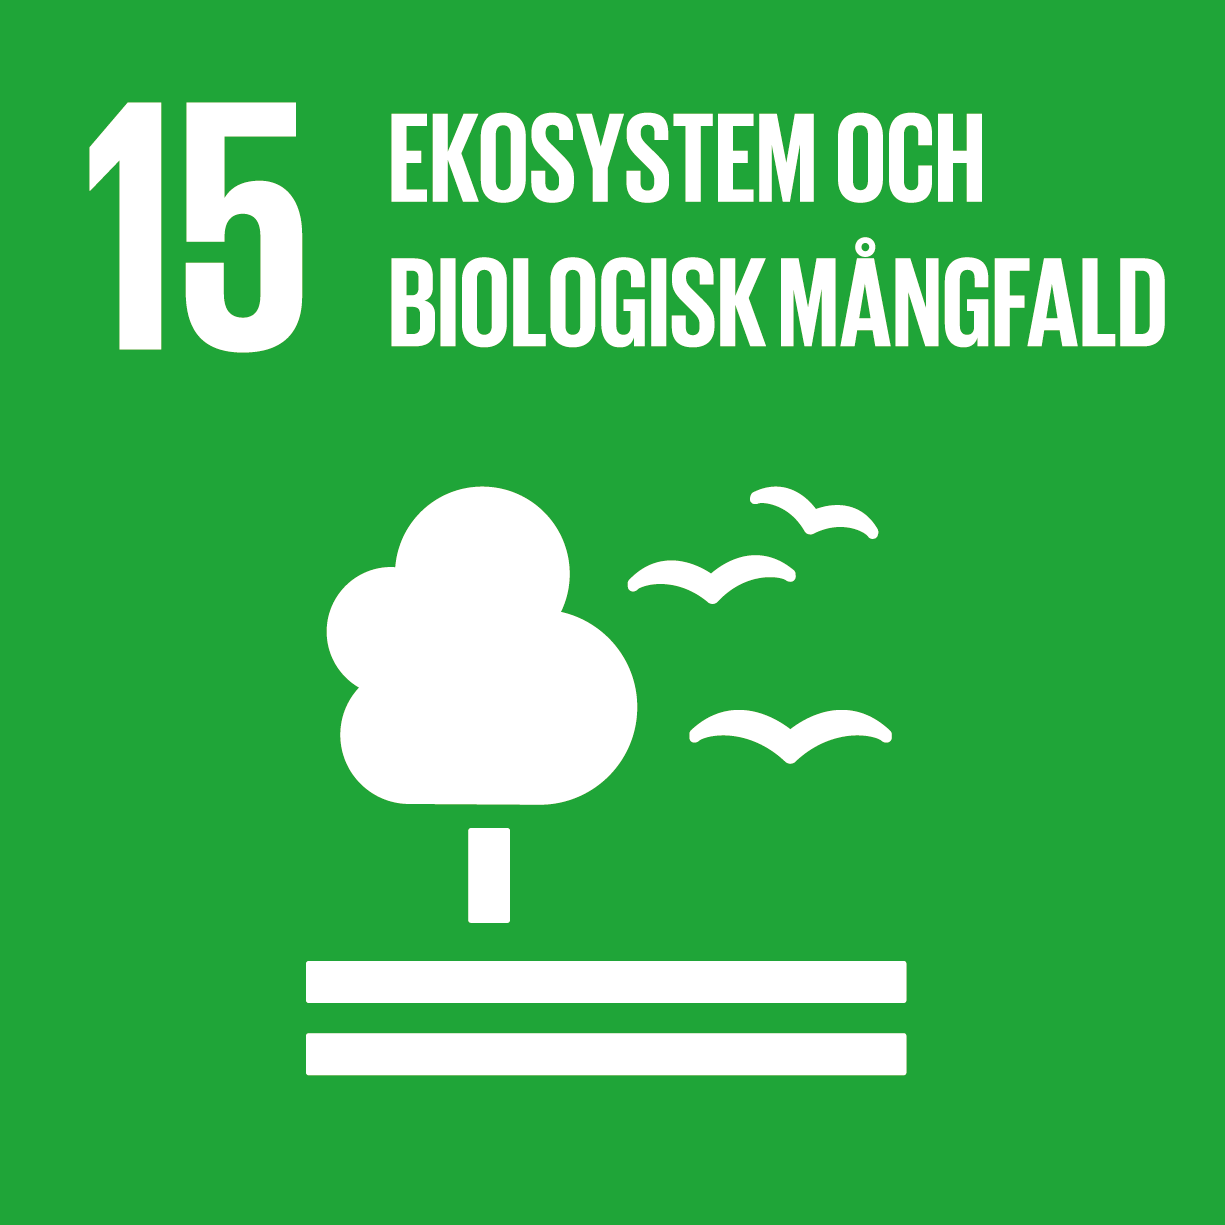 Logga för Förenta nationernas femtonde hållbarhetsmål - Ekosystem och biologisk mångfald